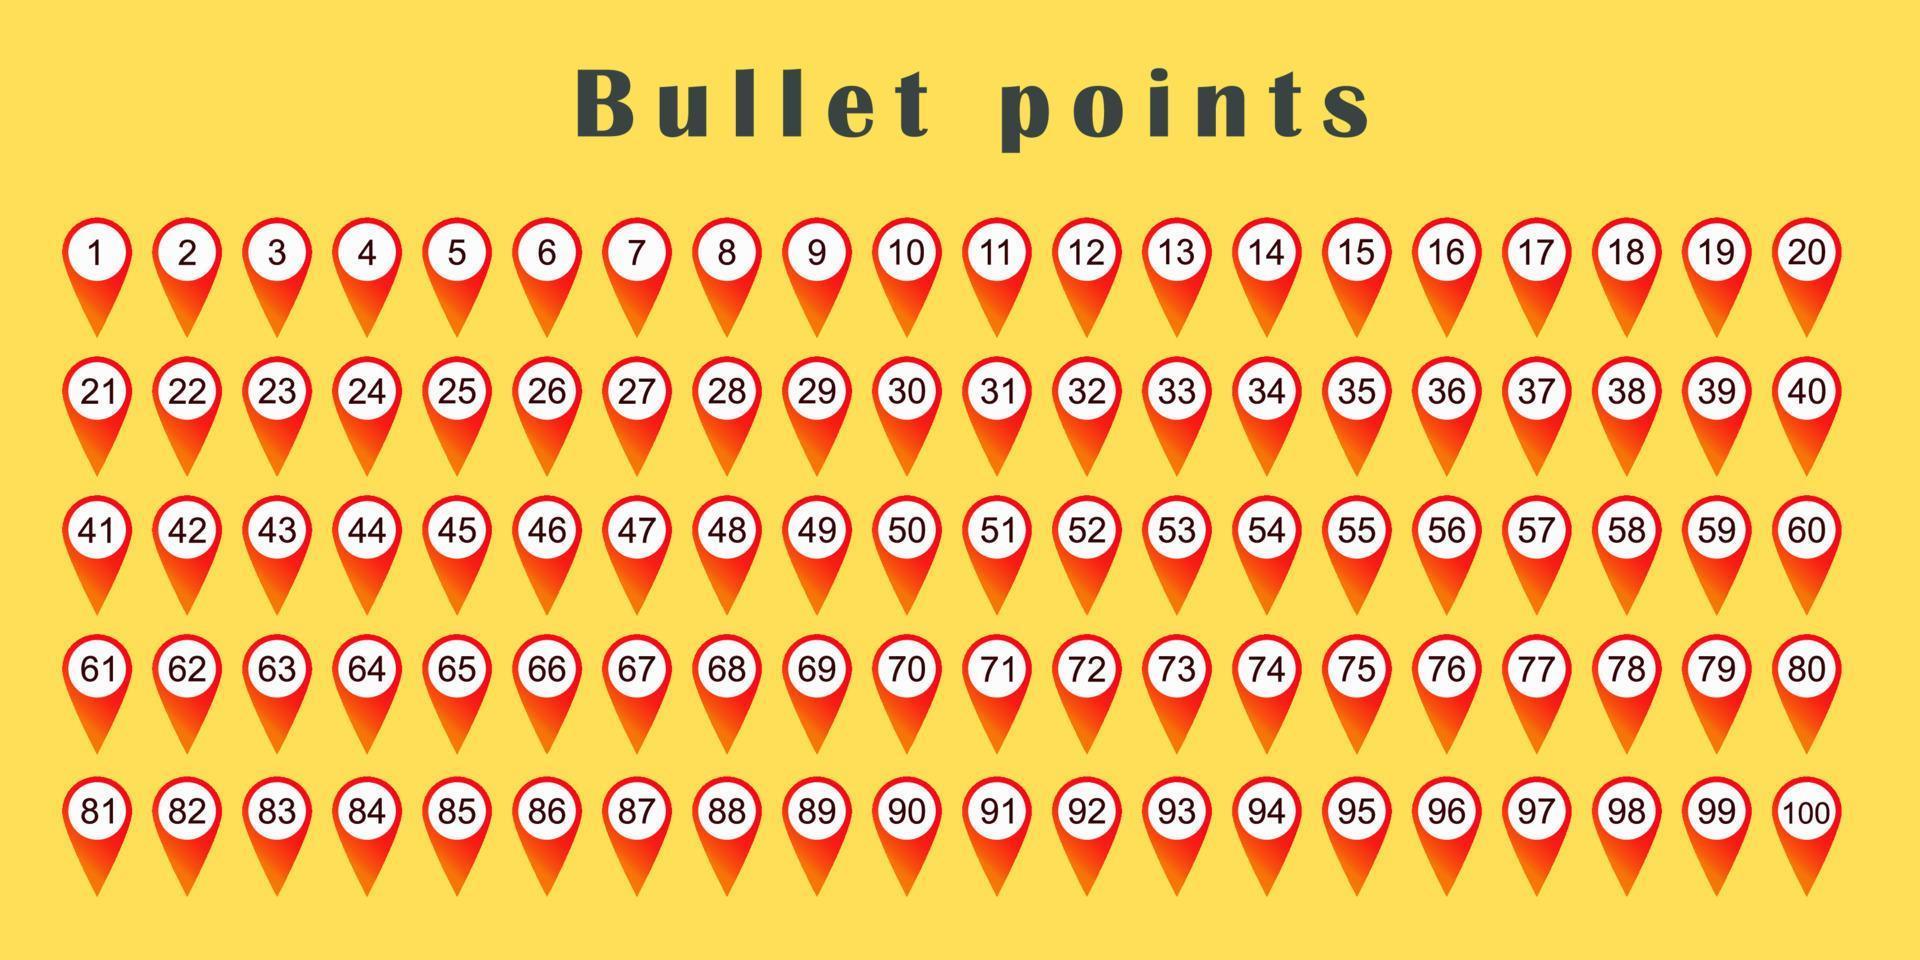 ponto de bala definido de 1 a 100. marcadores vermelhos com números em círculos brancos. design gráfico vetor